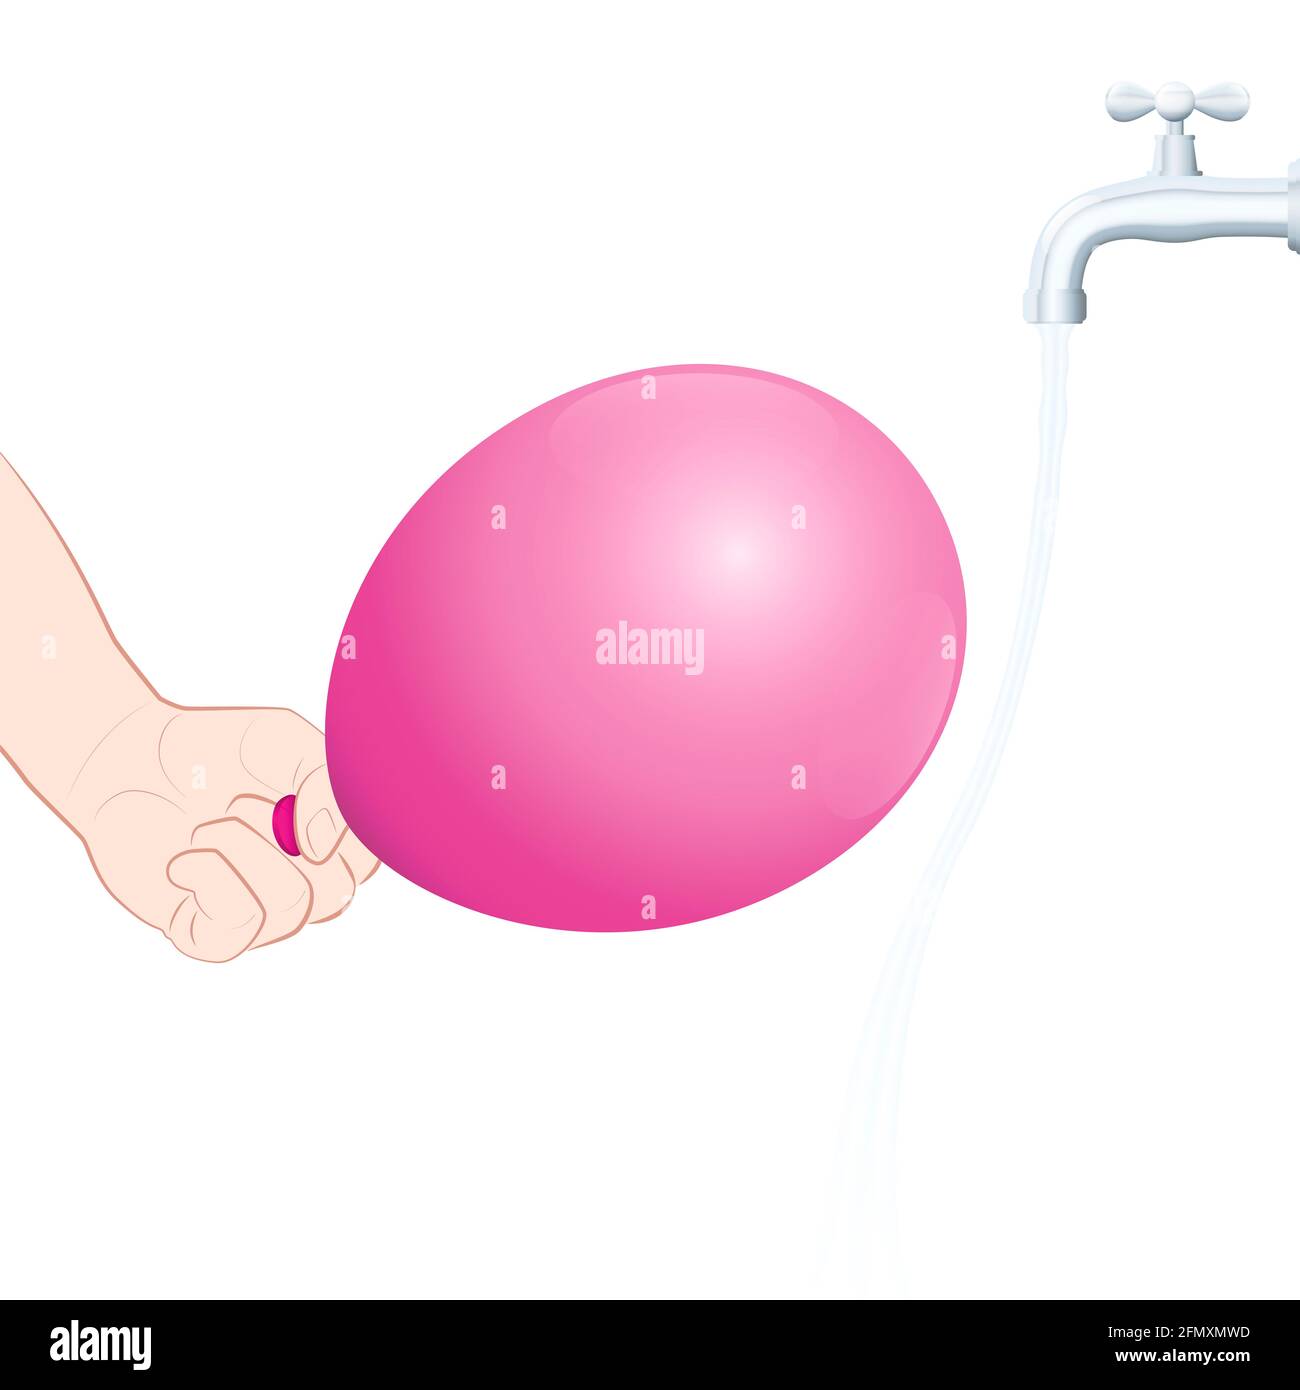 Durch einen geladenen Ballon hervorgerufene Wasserverbiegung. Statische Anziehung, physikalisches Experiment. Stellen Sie den Wasserhahn sanft auf, und reiben Sie den Ballon auf Ihrem Haar. Stockfoto